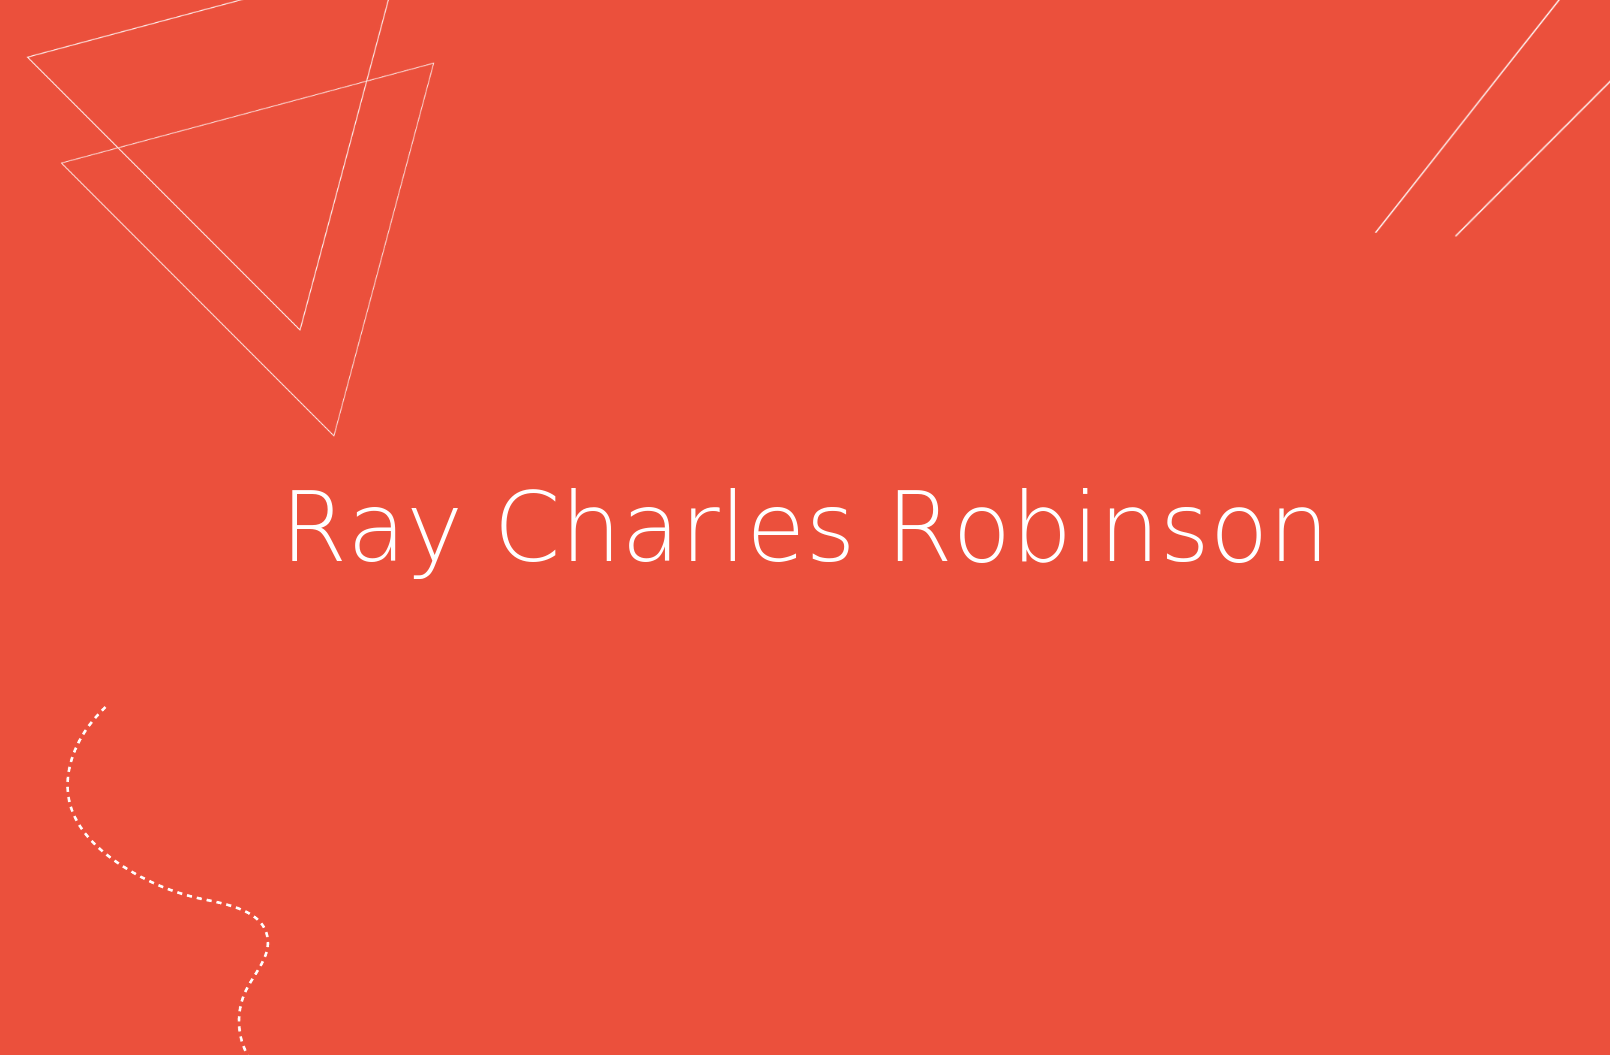 Biografía de Ray Charles Robinson